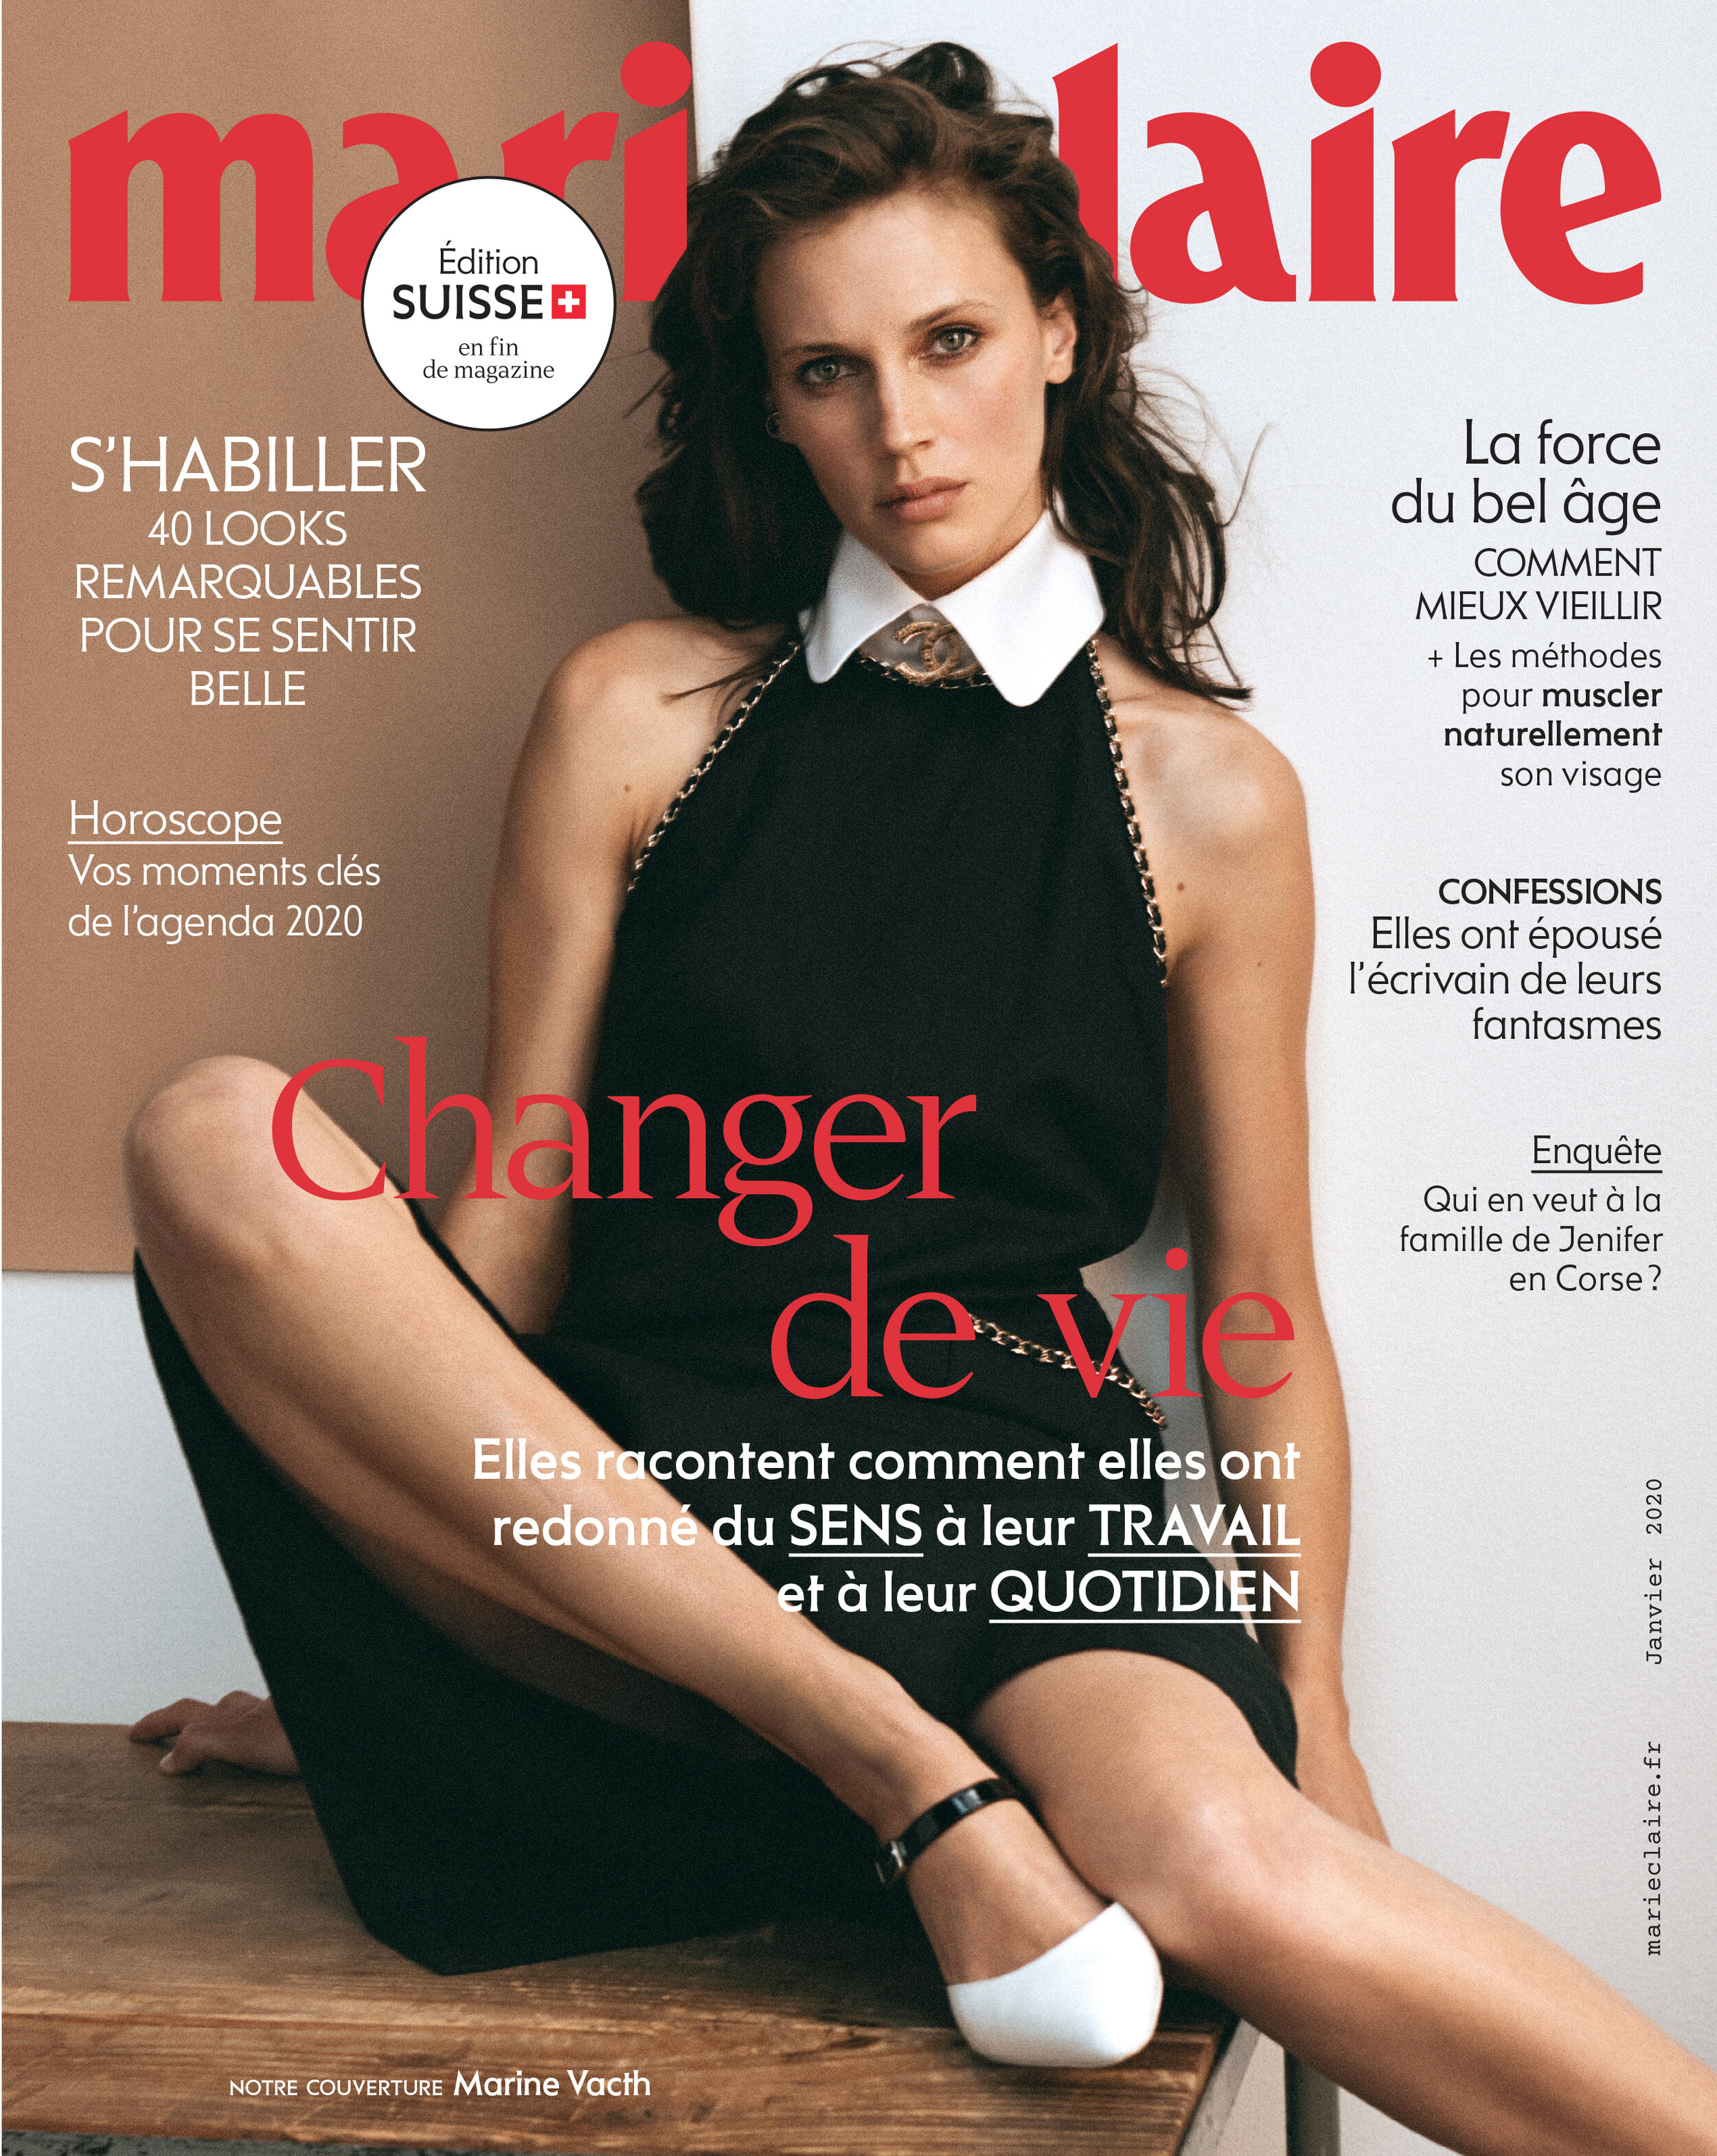 UNE Marie Claire Suisse - Décembre - 2019.jpg